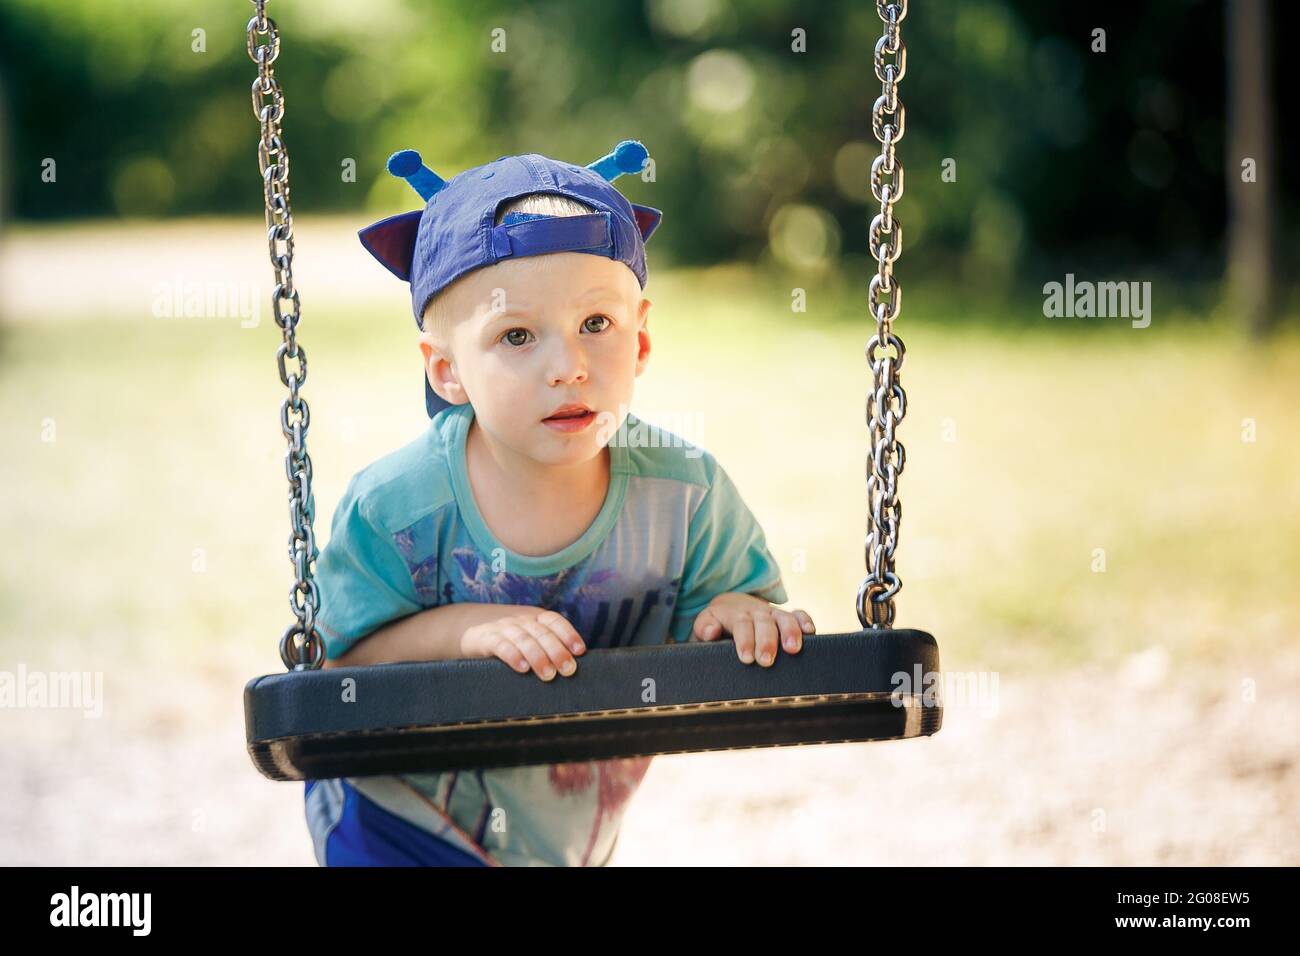 Porträt eines kleinen Jungen, der im Park mit Schaukel spielt Stockfoto